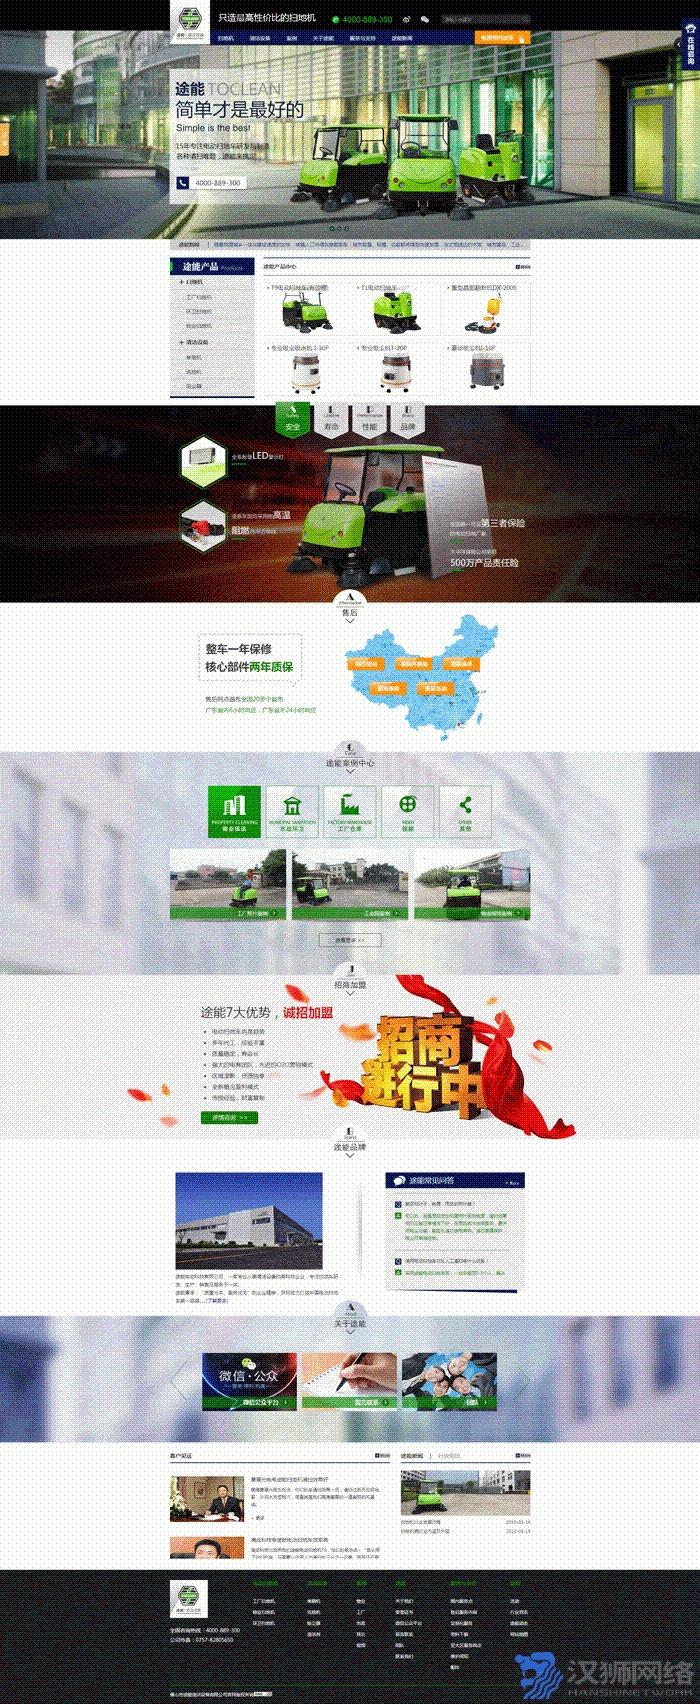 郑州网站制作案例途能电动科技有限公司